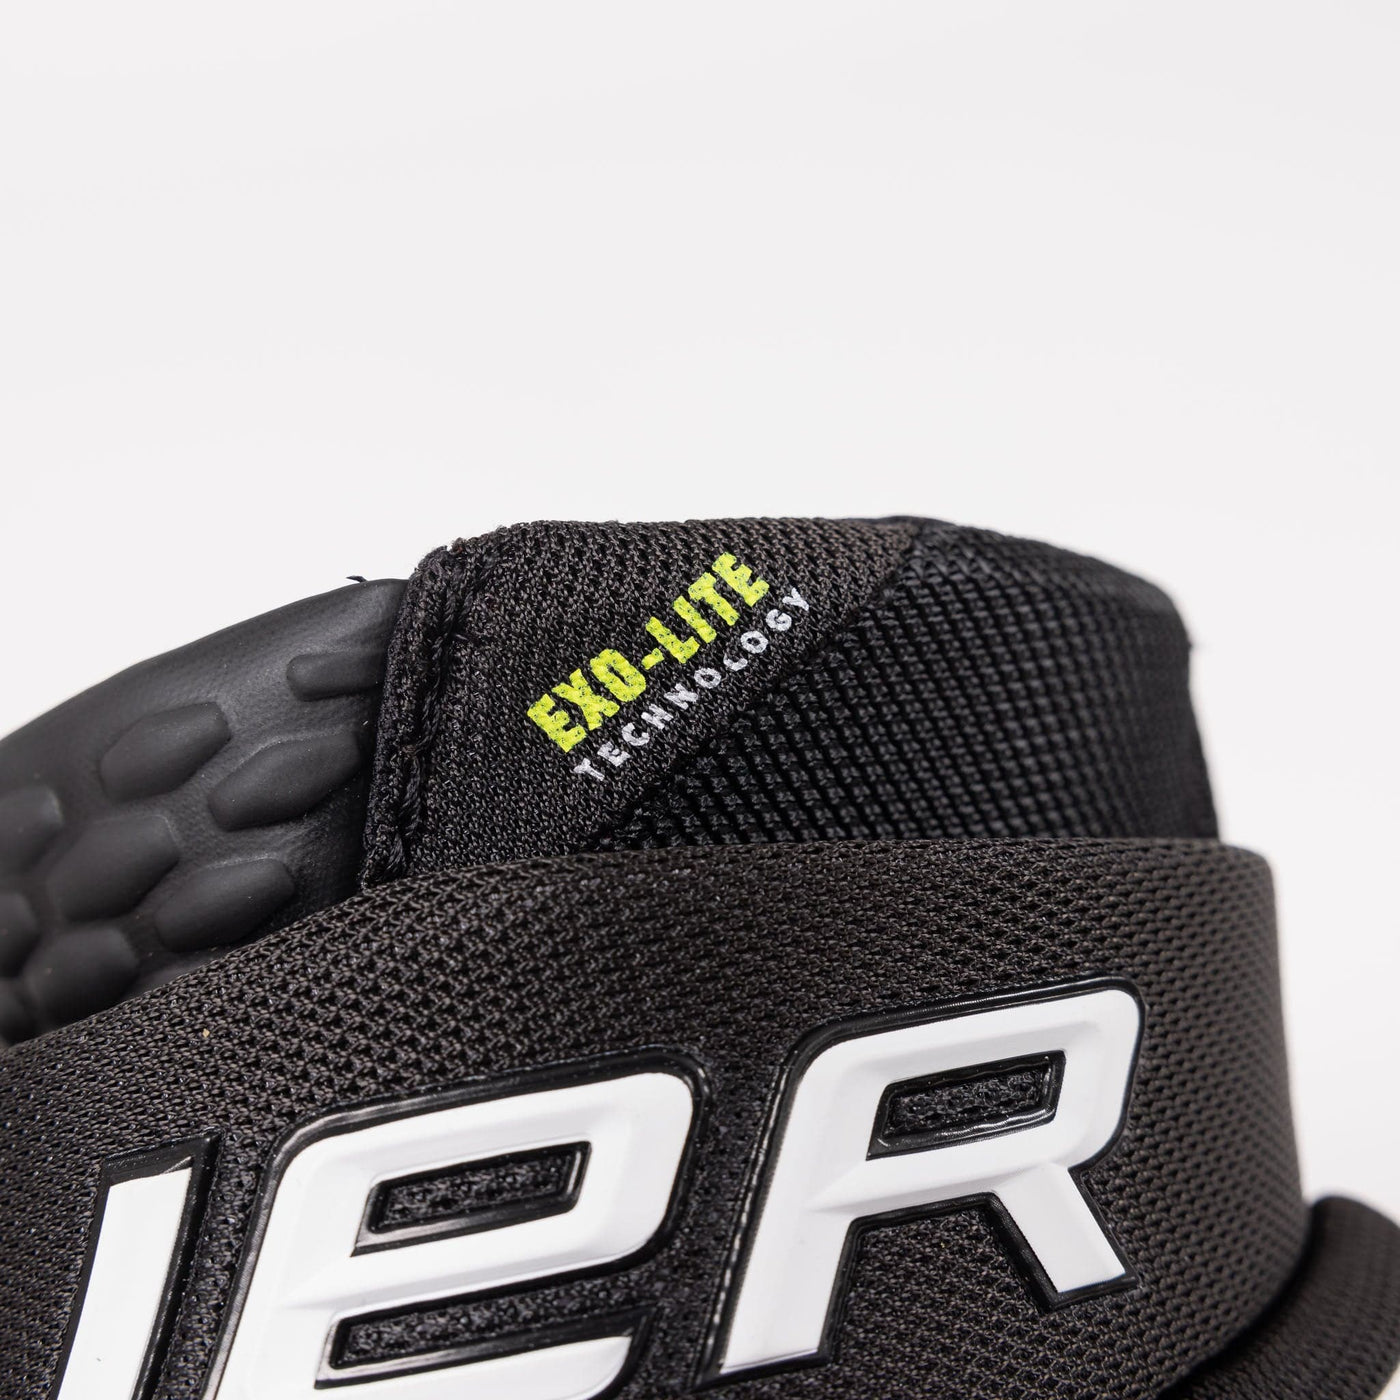 Bauer Vapor Hyperlite Junior Hockey Gloves - The Hockey Shop Source For Sports